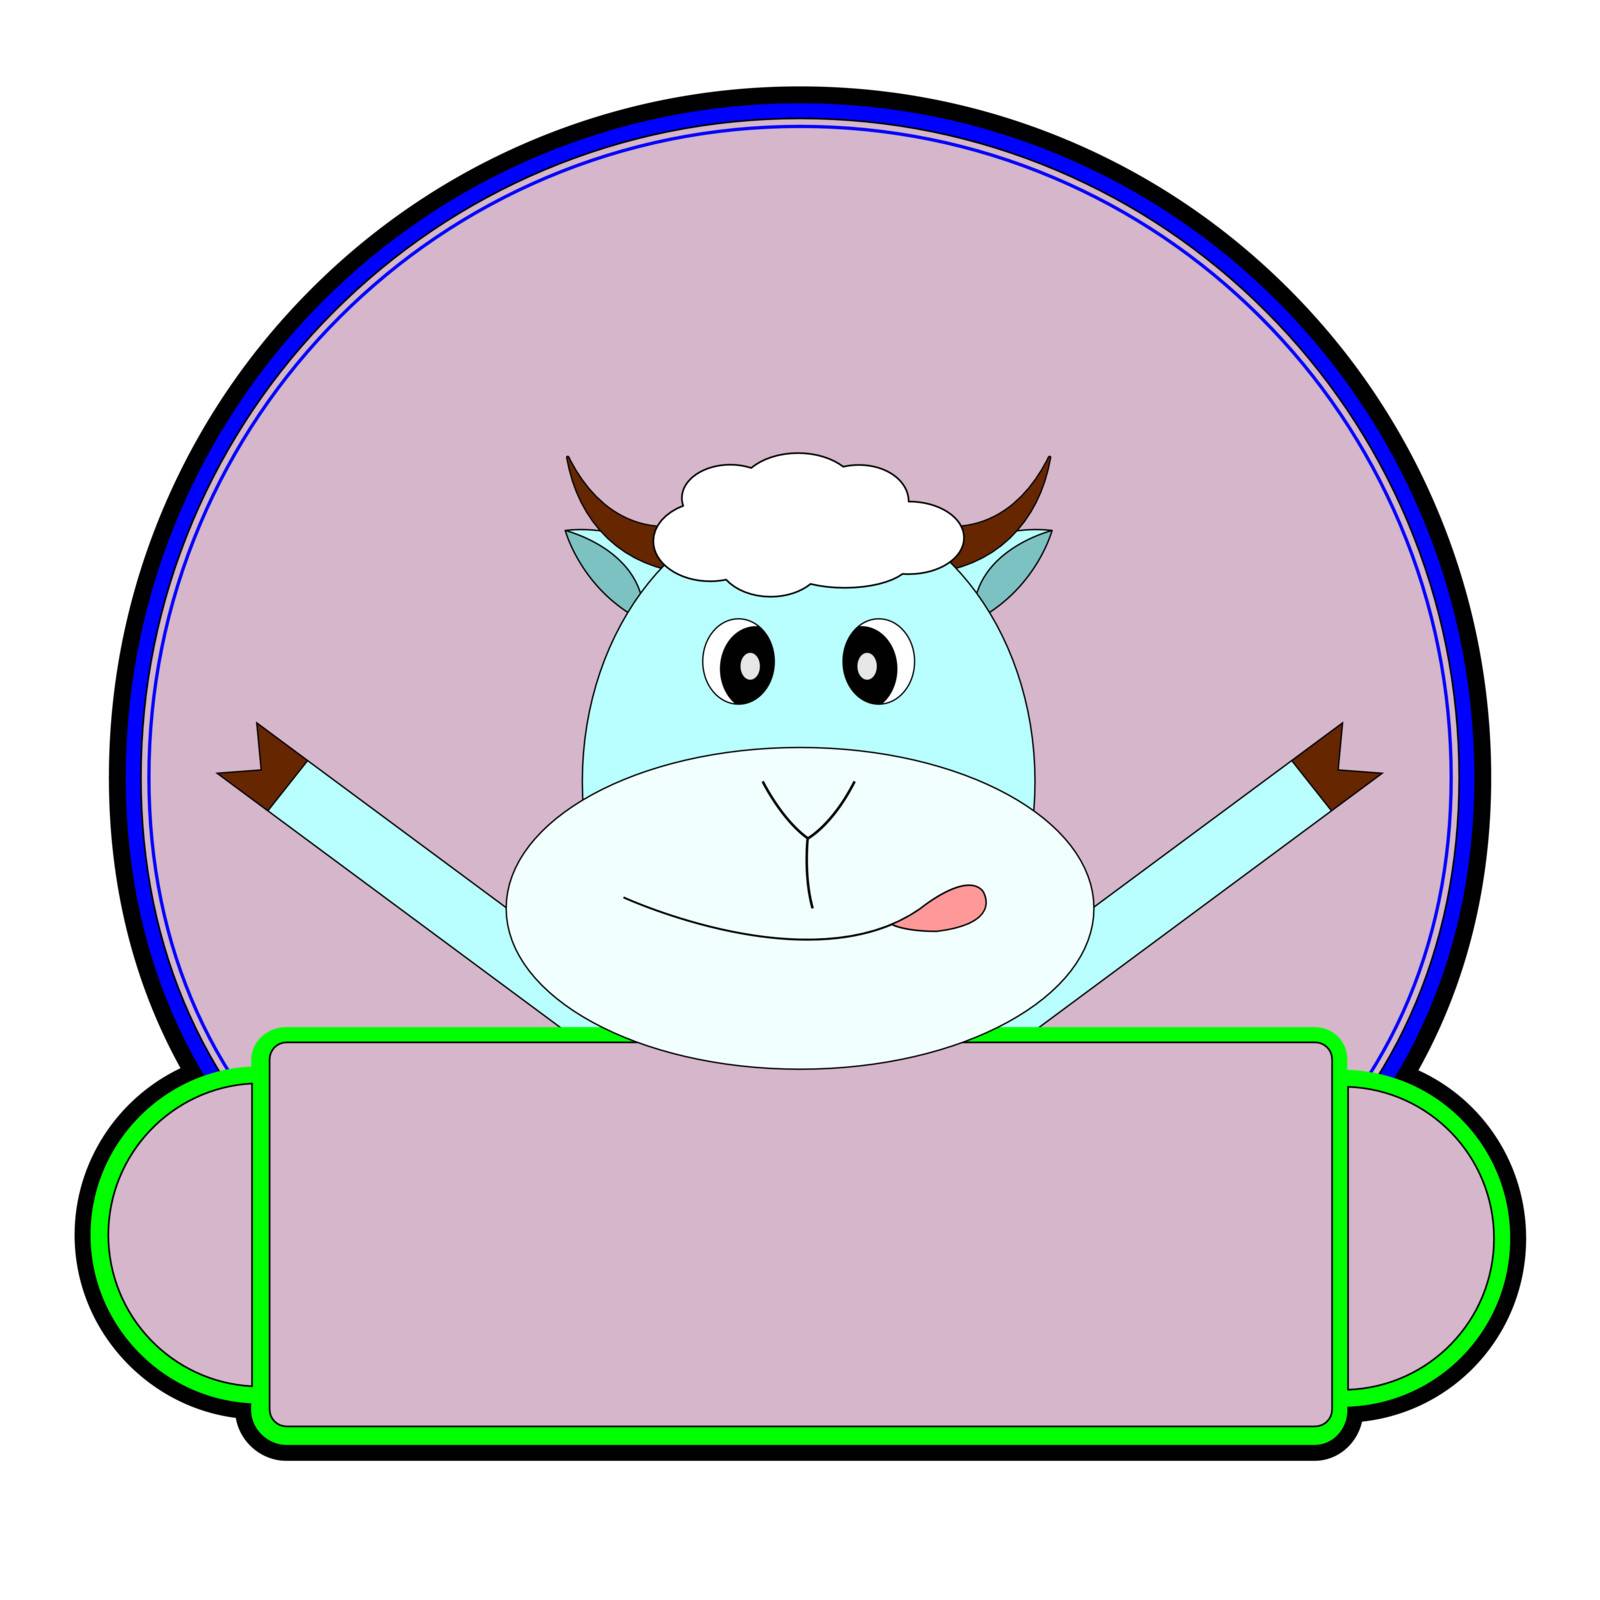 logo featuring a fun sheep by volandemorius66